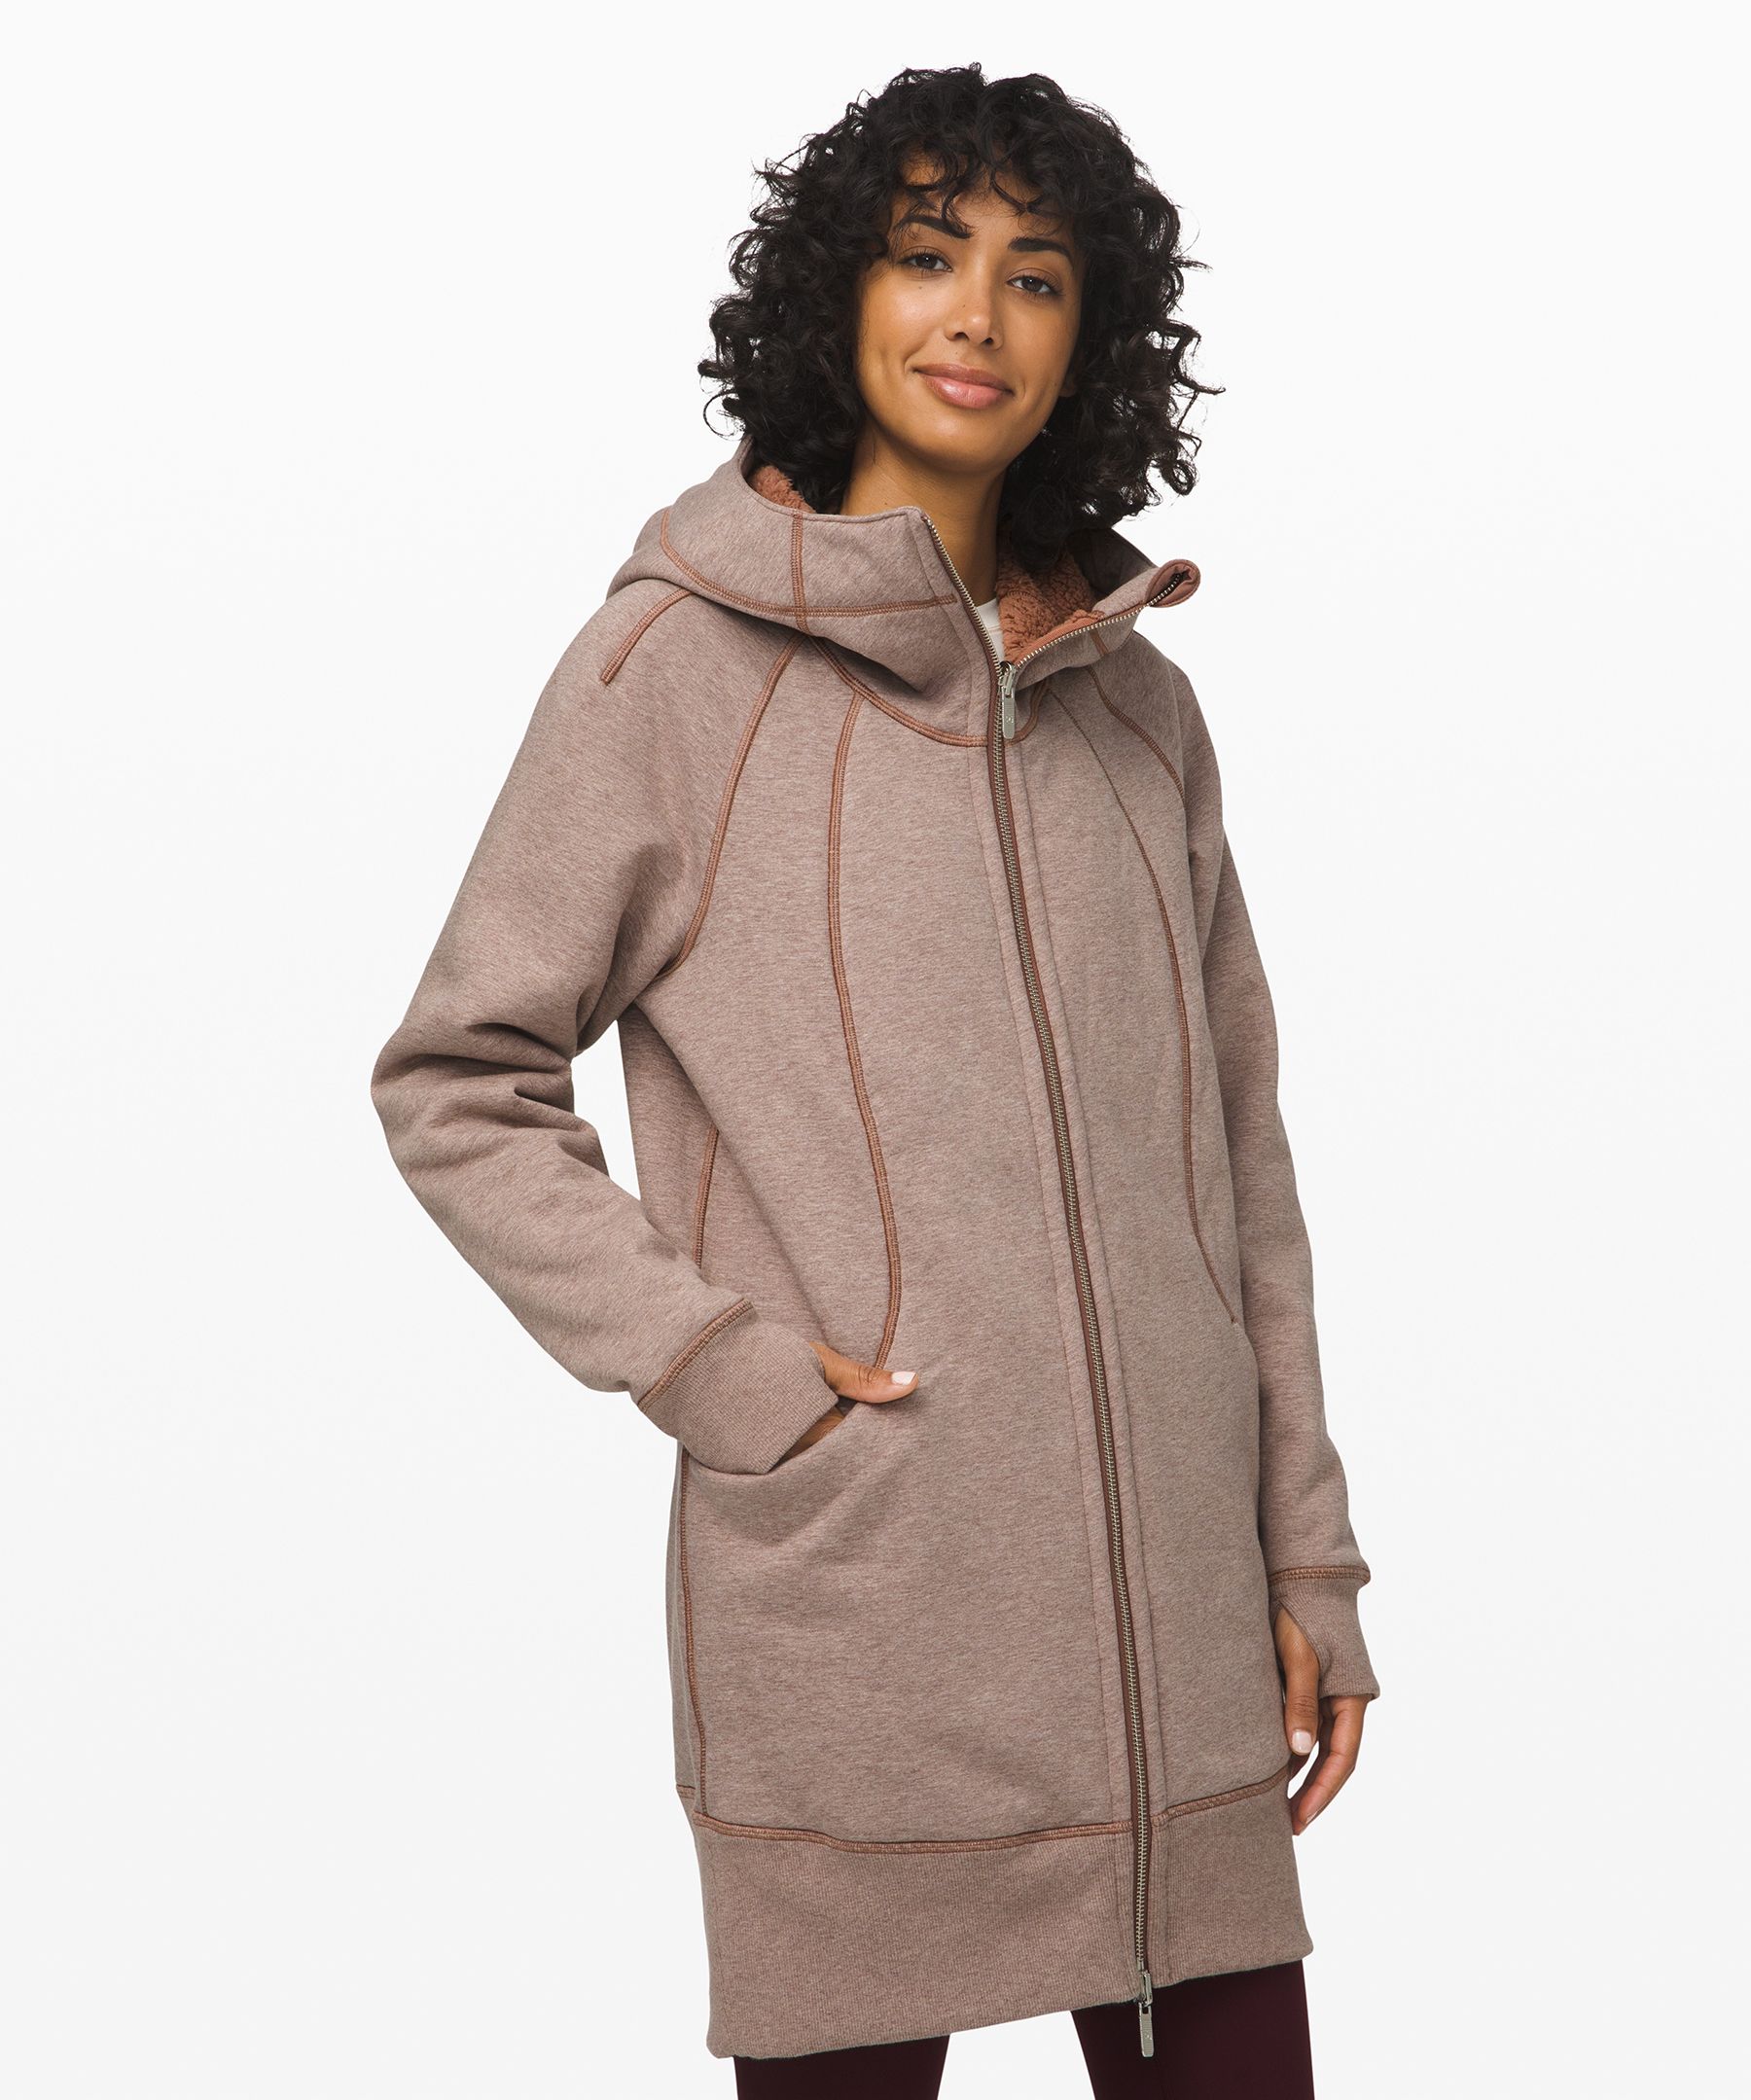 lululemon sherpa hooded jacket